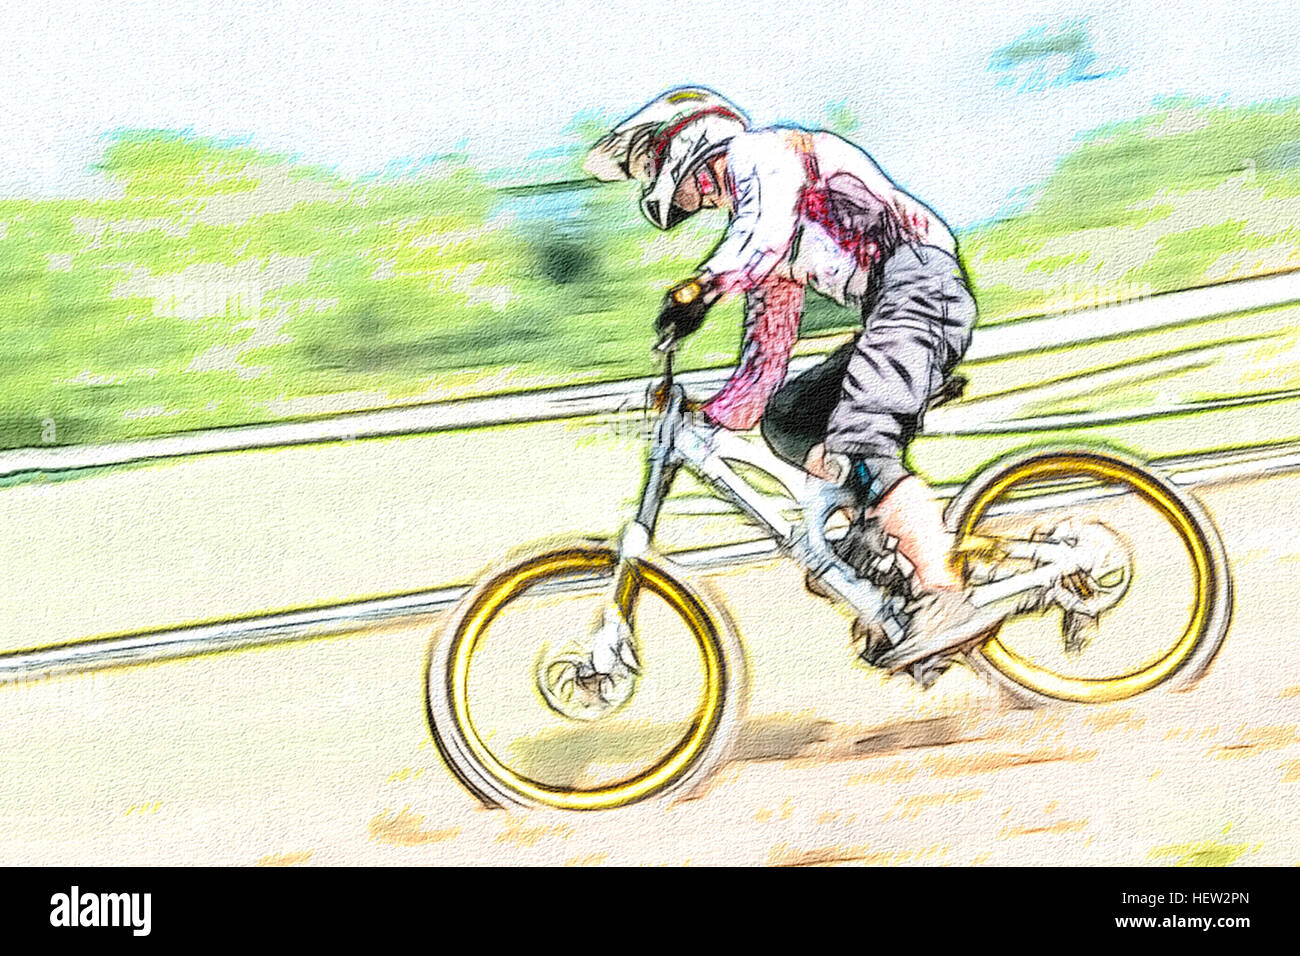 Downhill Biker dans le style de dessin de la concurrence Banque D'Images